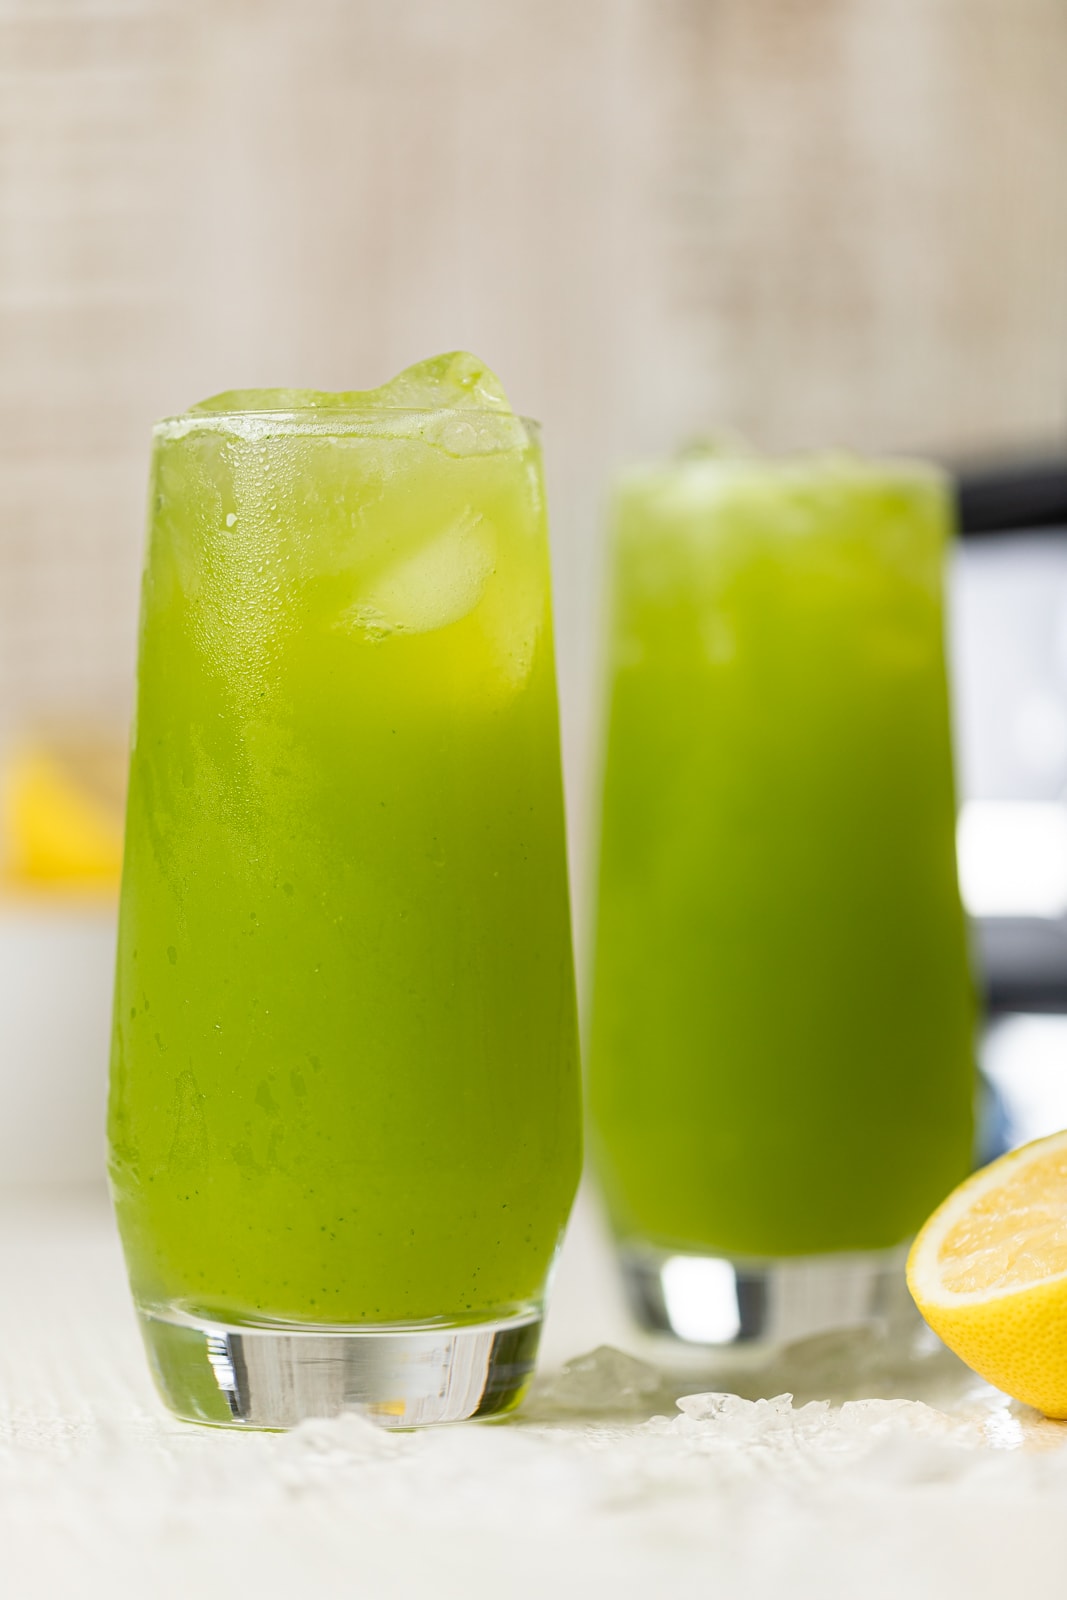 Closeup of two glasses of bright green Kale Lemonade